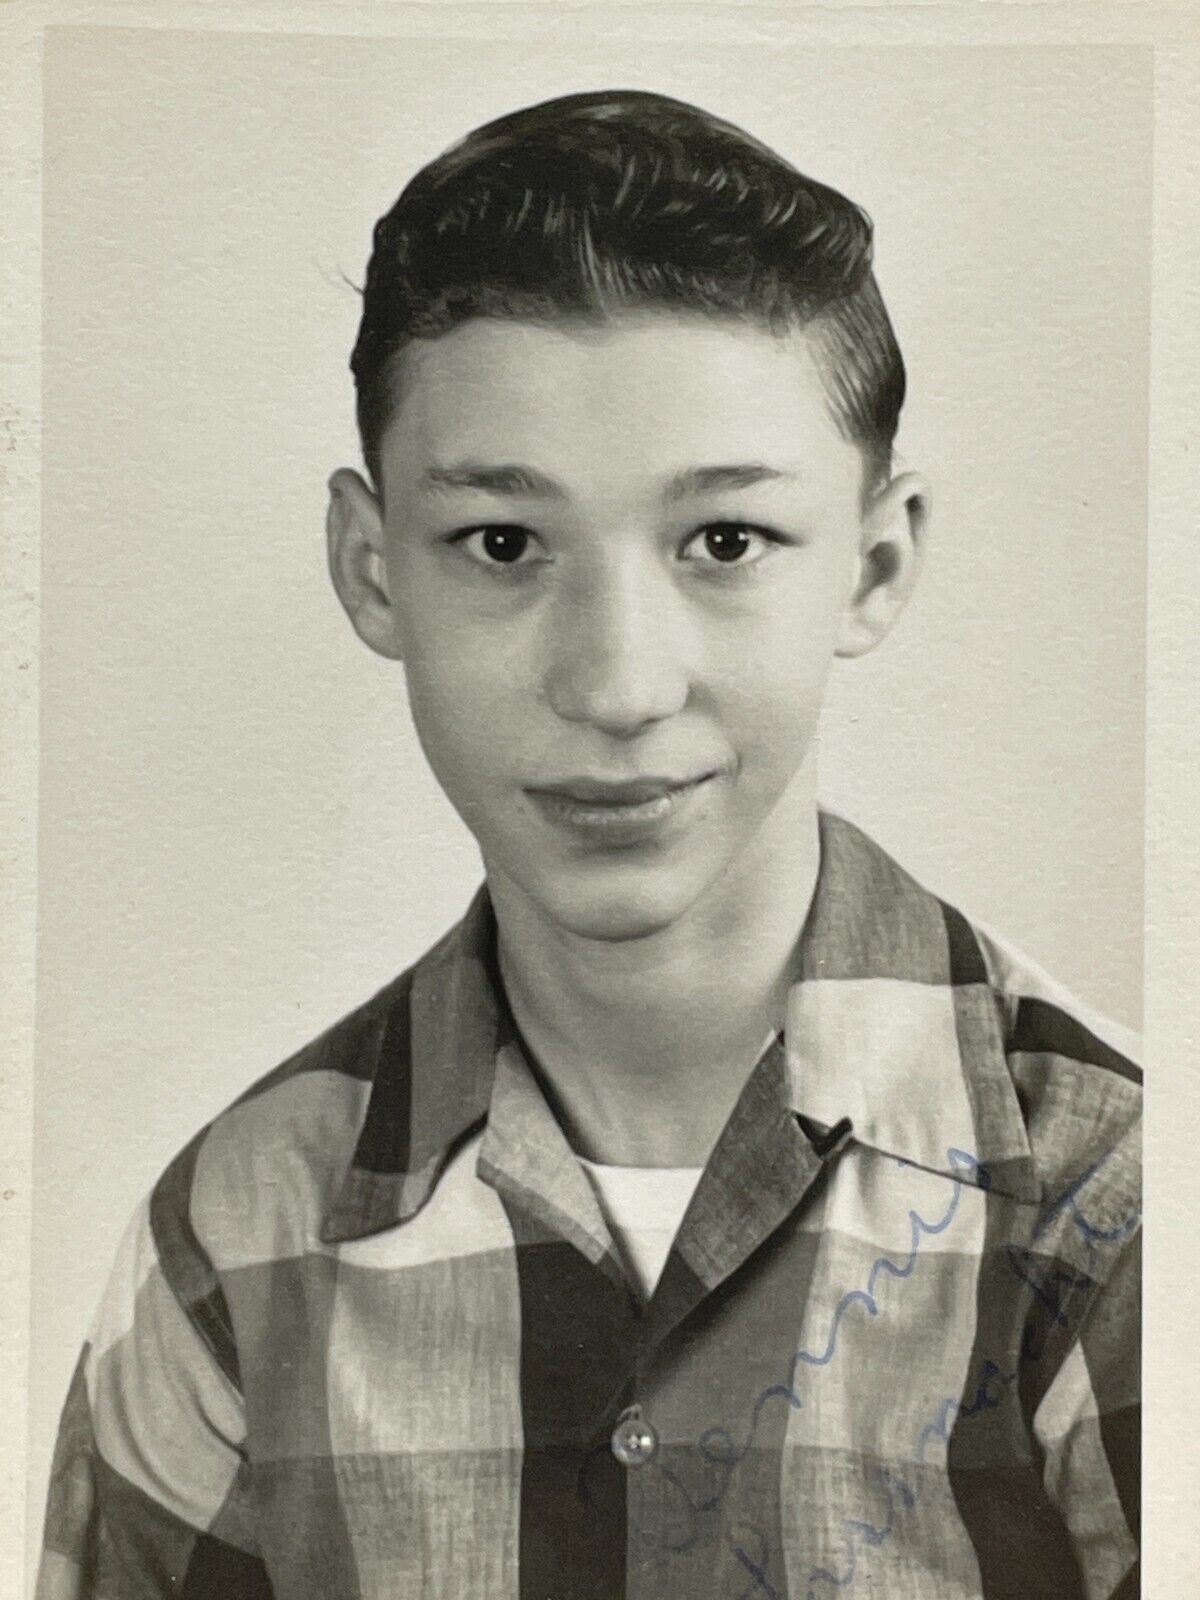 NF Photograph Boy Young Man School Class Photo 1950-60's Portrait